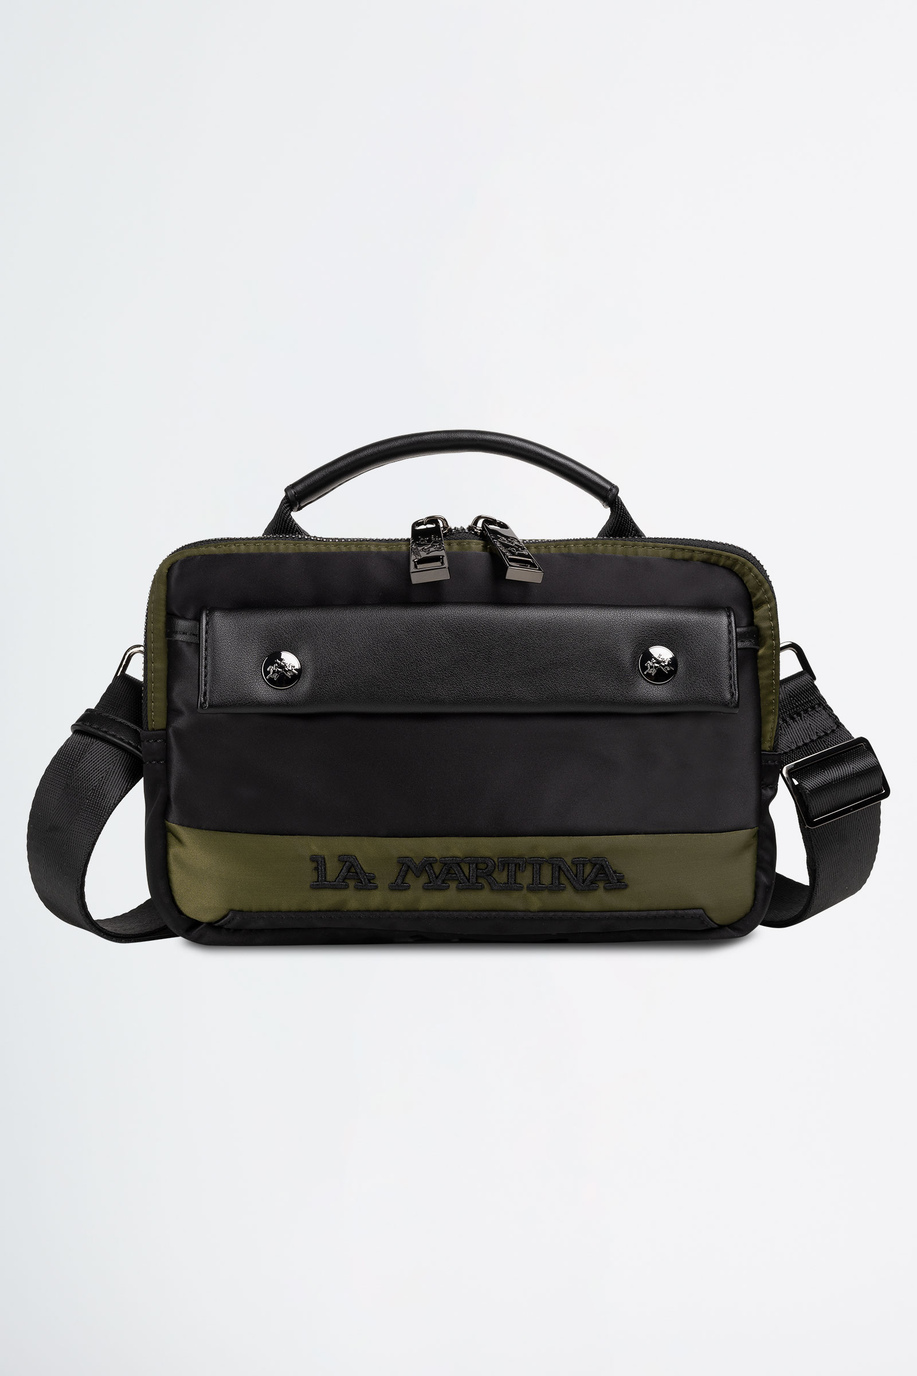 Umhängetasche aus Stoff - Taschen | La Martina - Official Online Shop